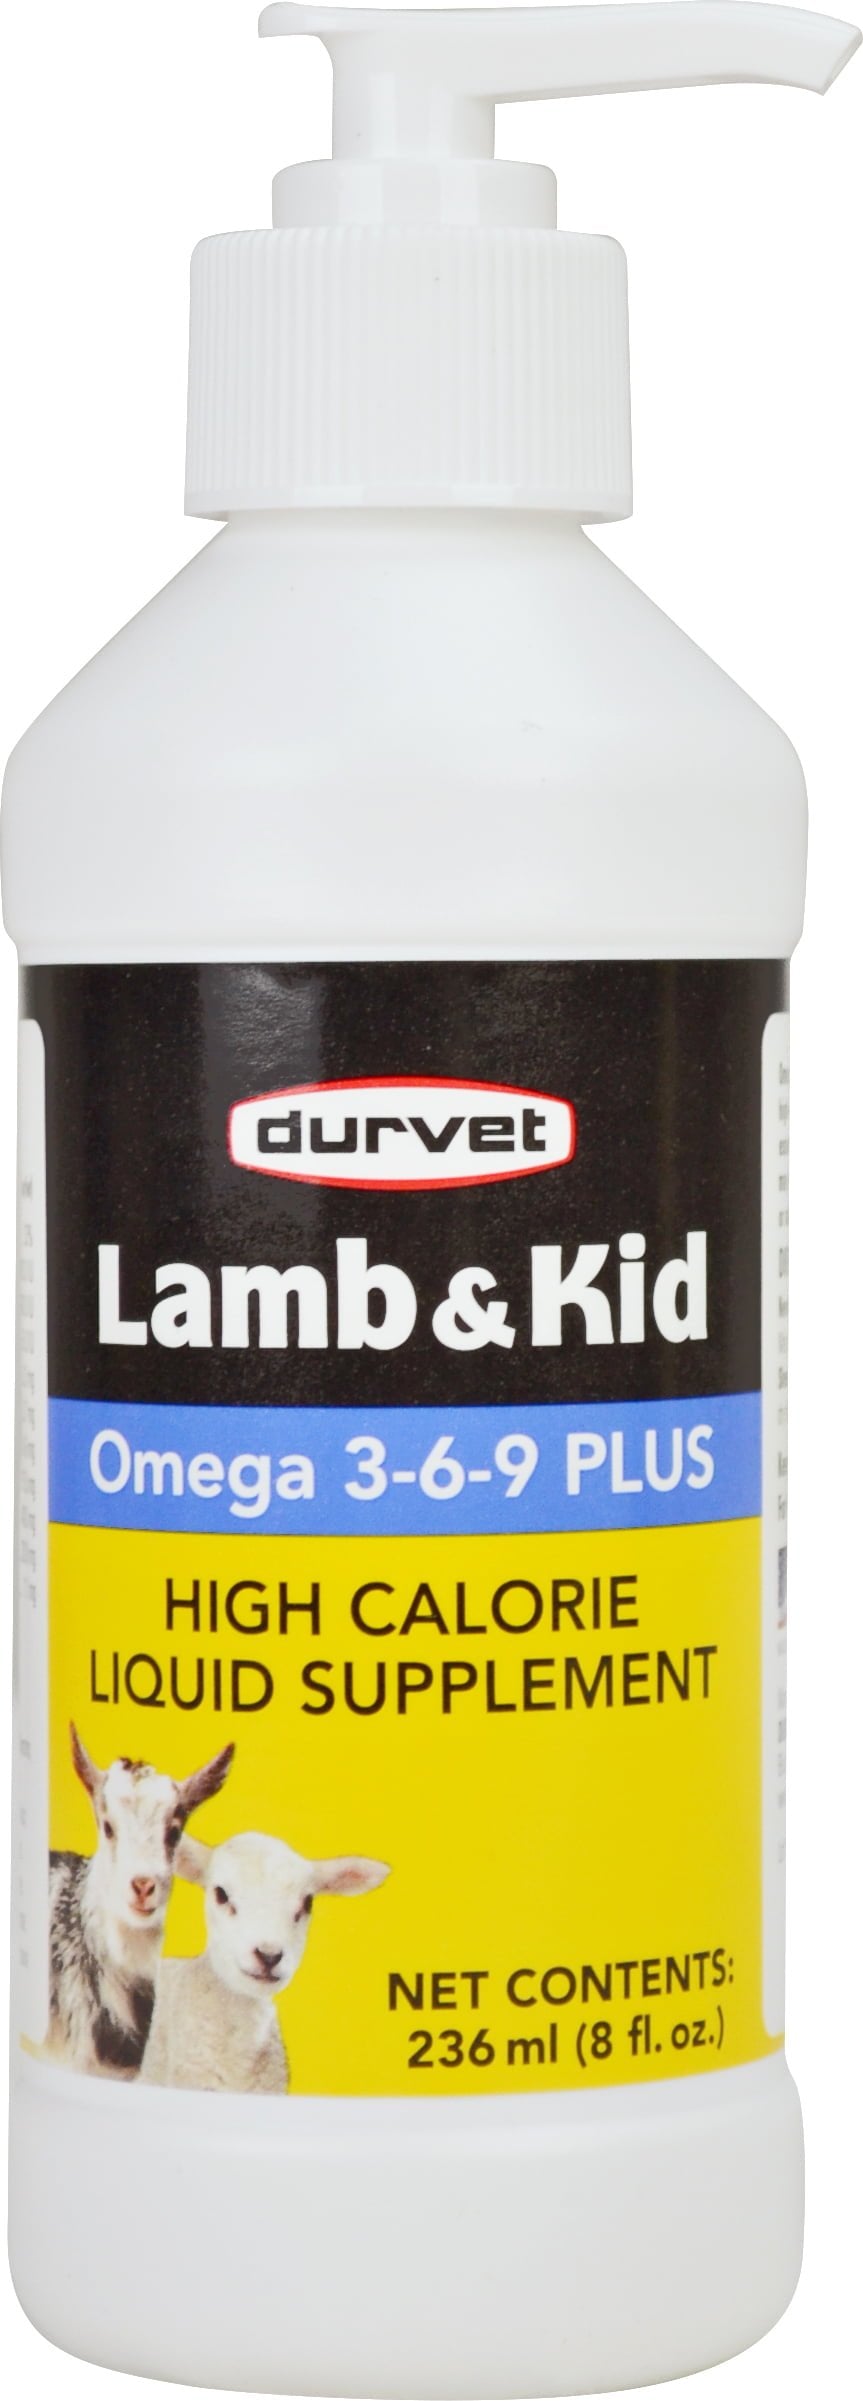 Durvet Lamb & Kid Omega 3-6-9 Plus